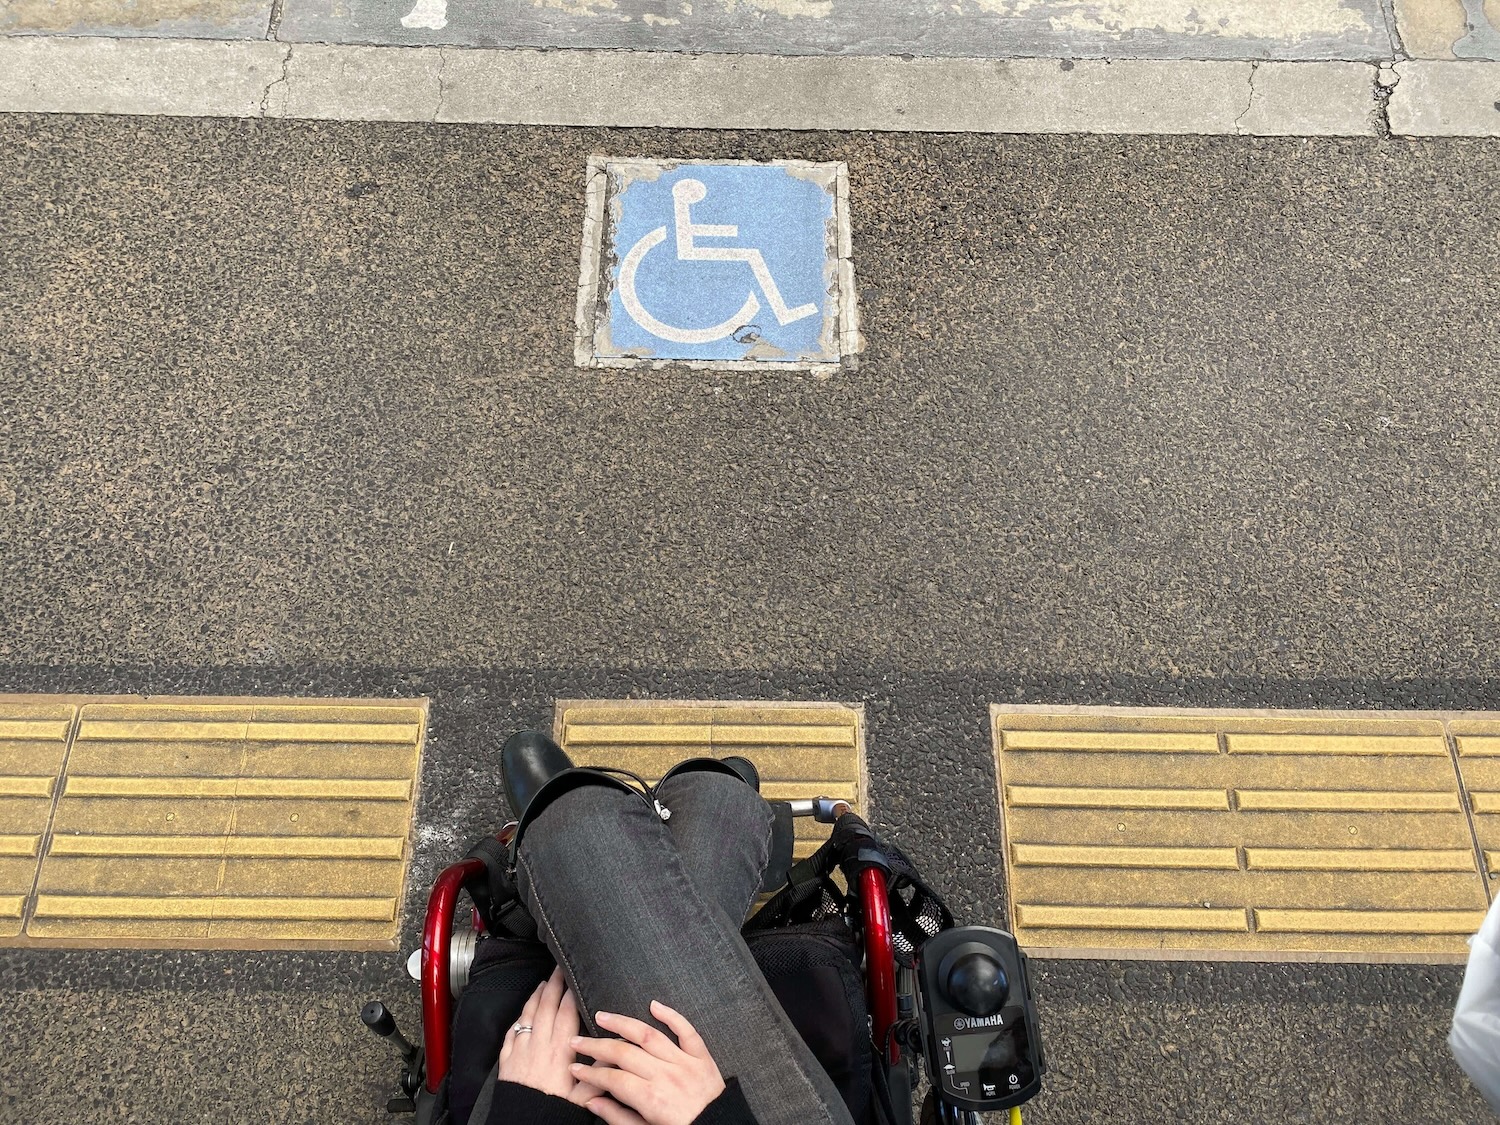 車椅子に乗った方が地面に敷かれた点字ブロックを見下ろす視点で撮られた写真です